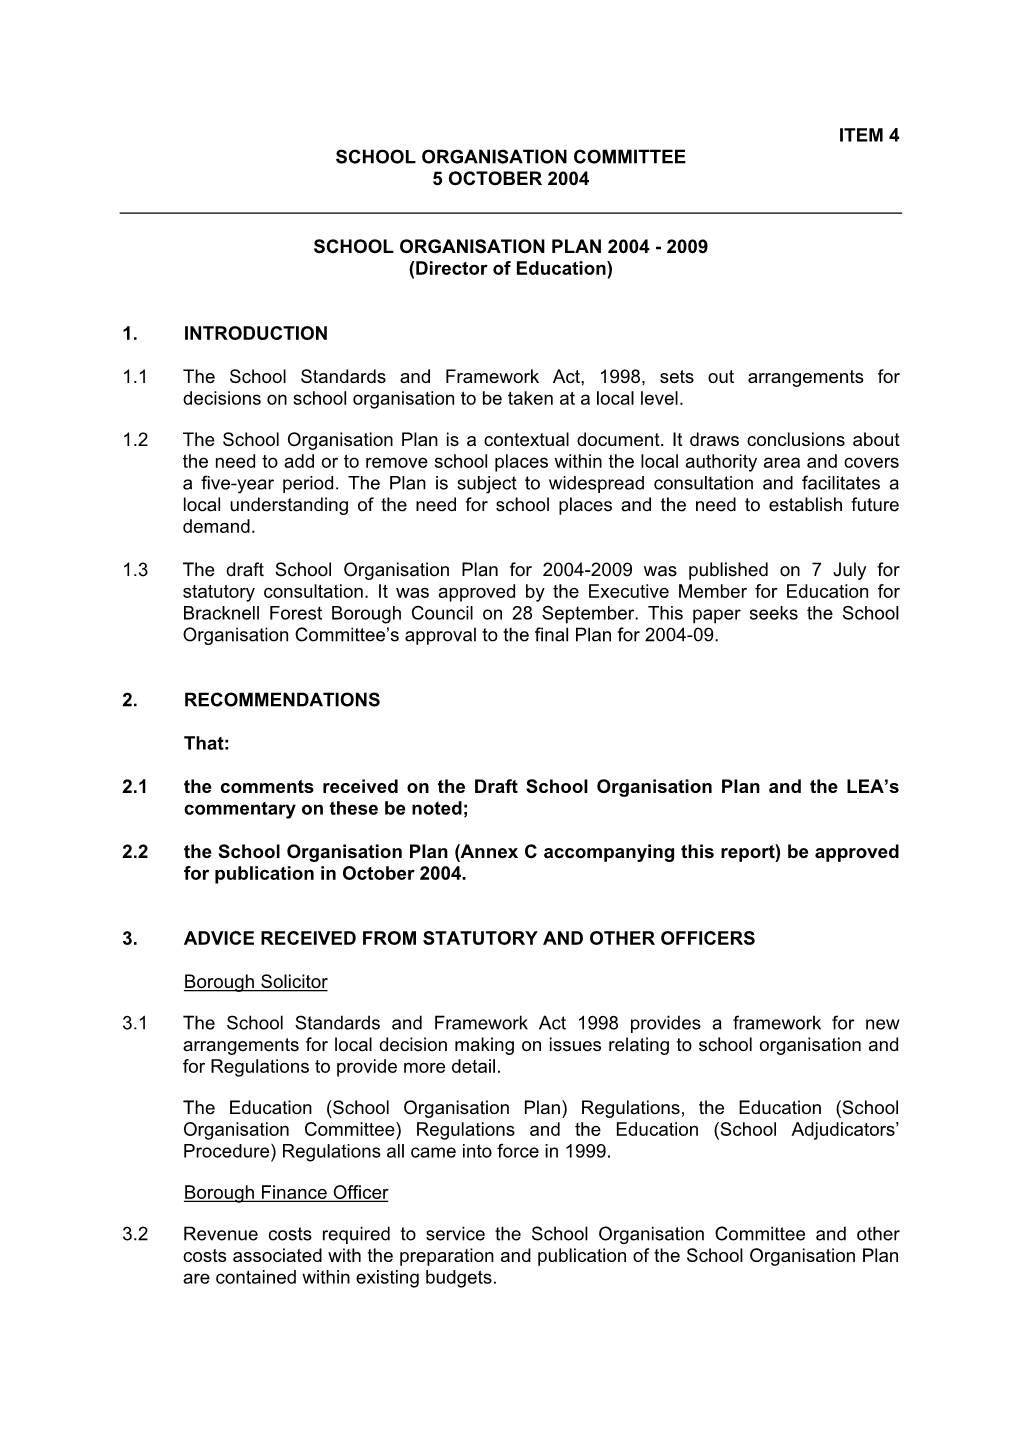 Item 4 School Organisation Committee 5 October 2004